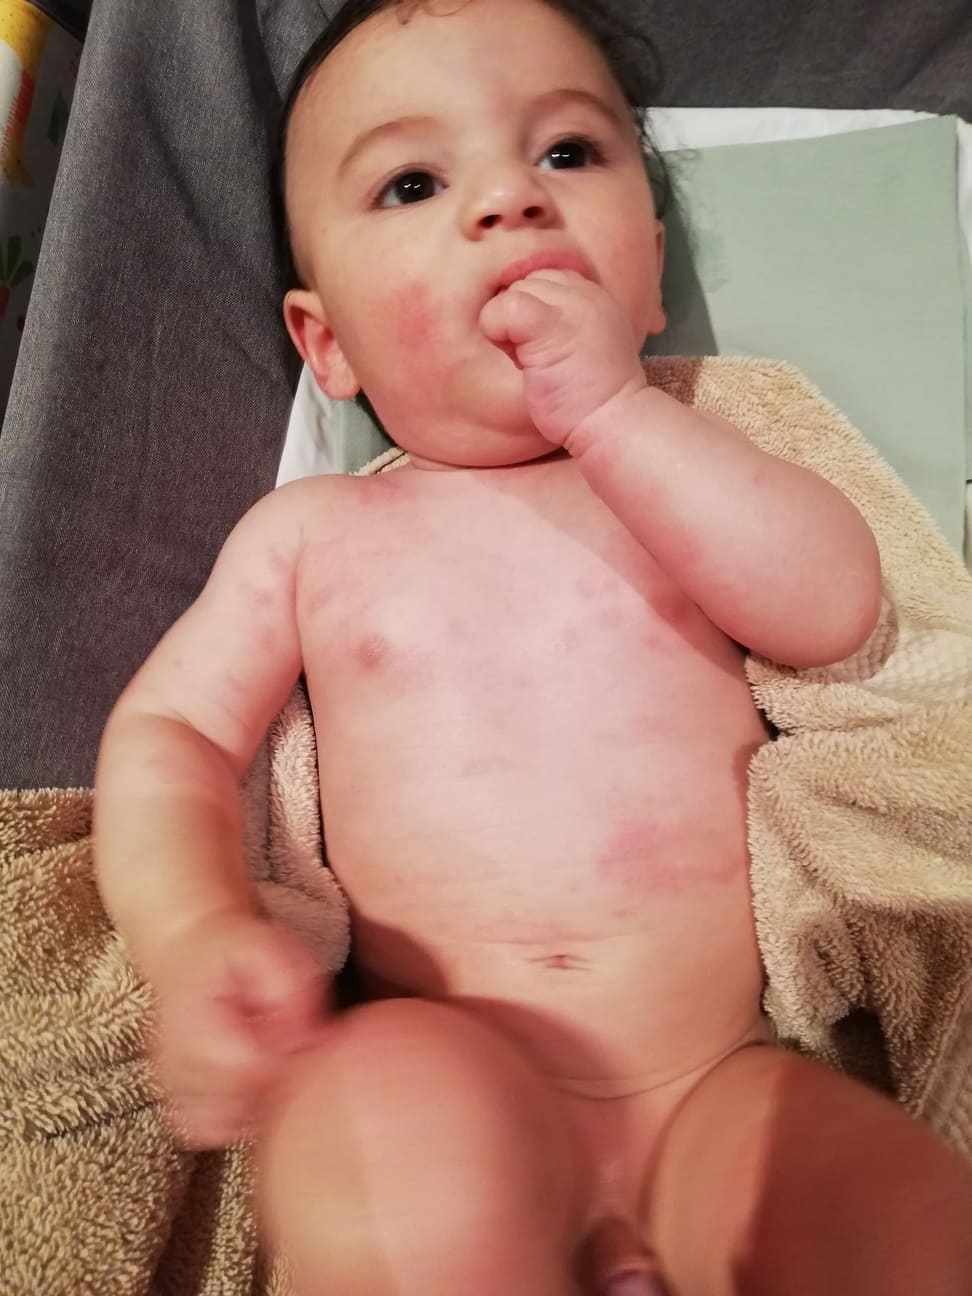 طفلي عنده حساسية على الجلد